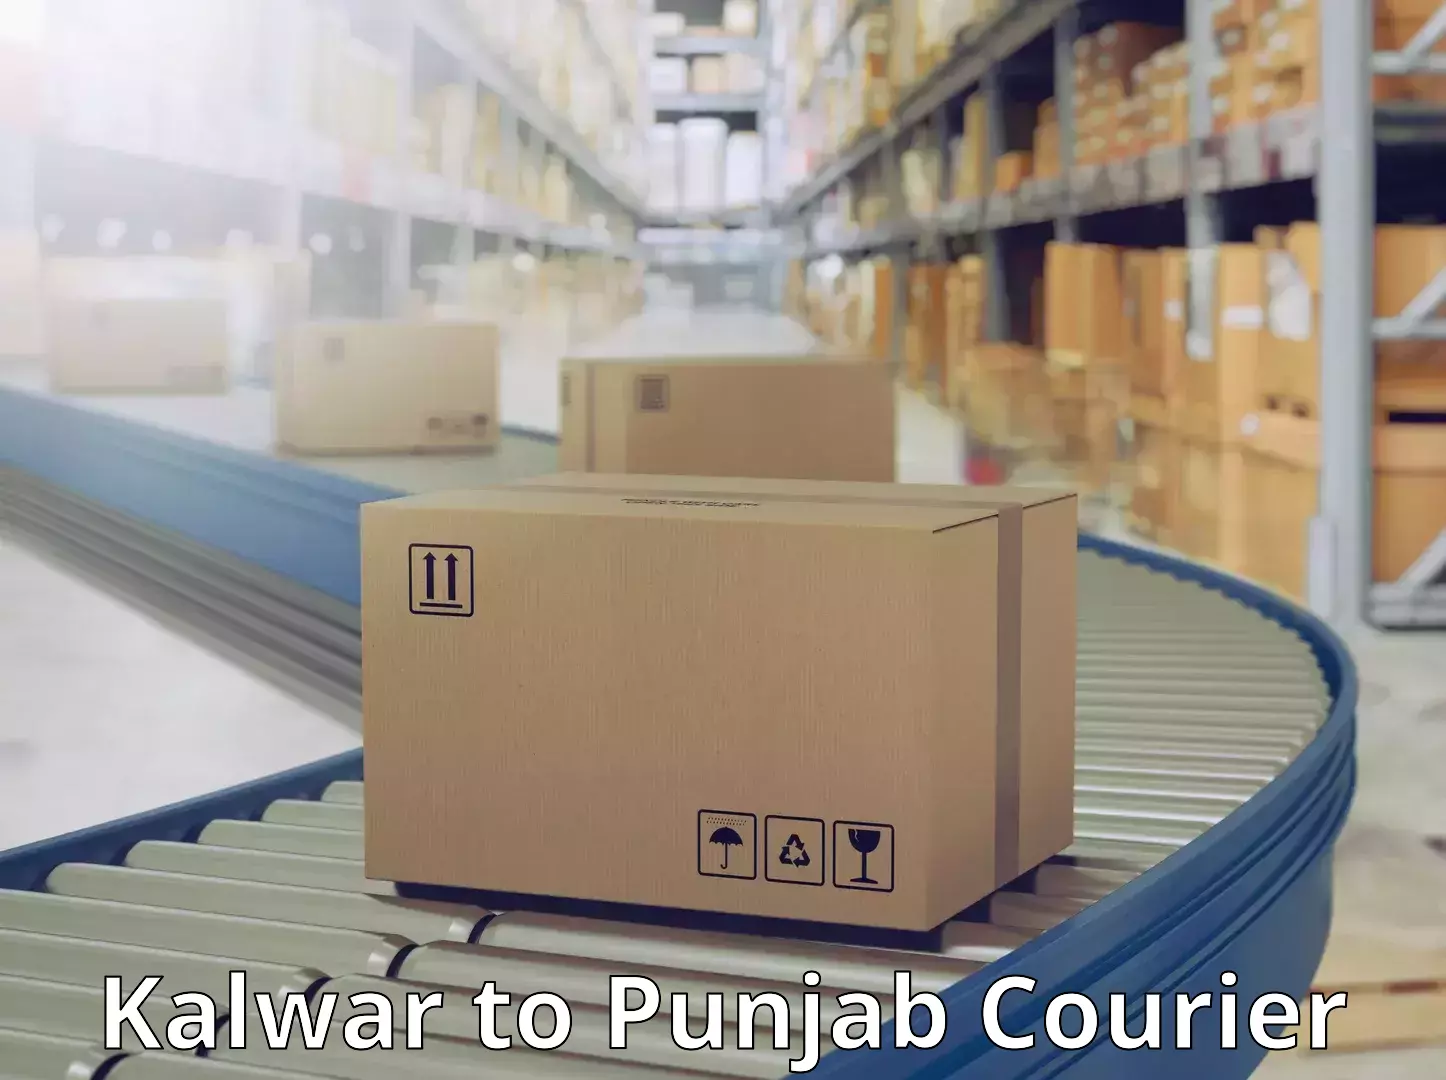 Affordable parcel service Kalwar to Central University of Punjab Bathinda